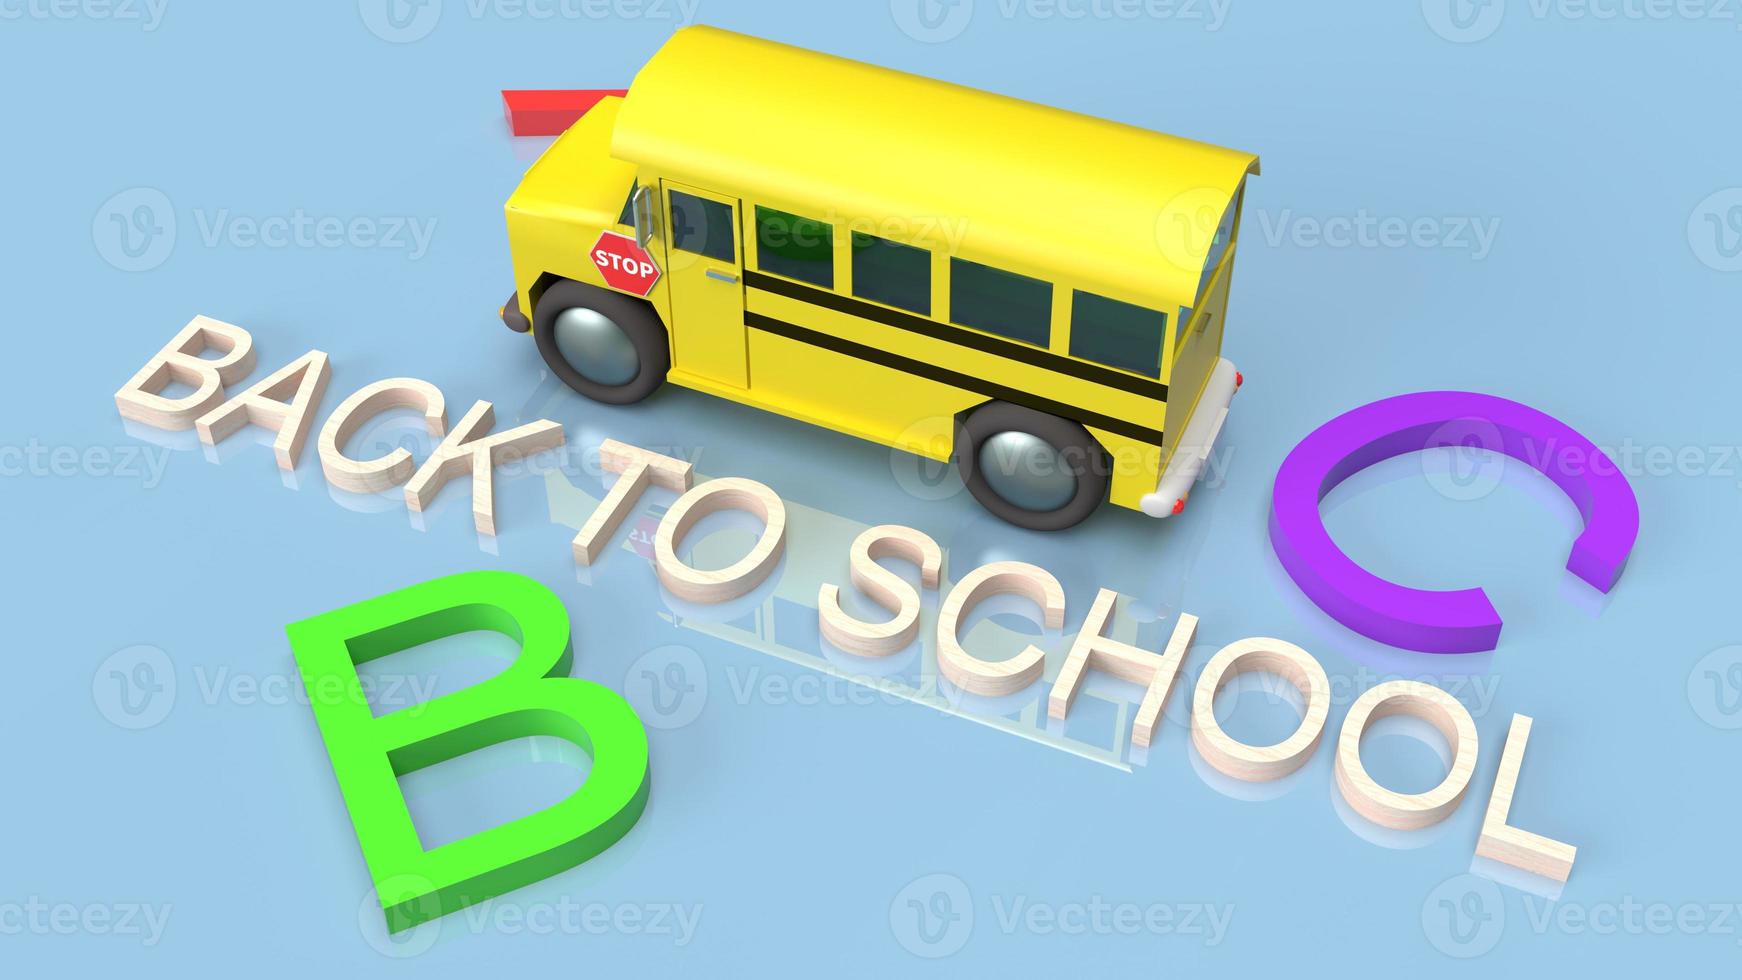 schoolbus 3D-rendering voor terug naar school inhoud. foto